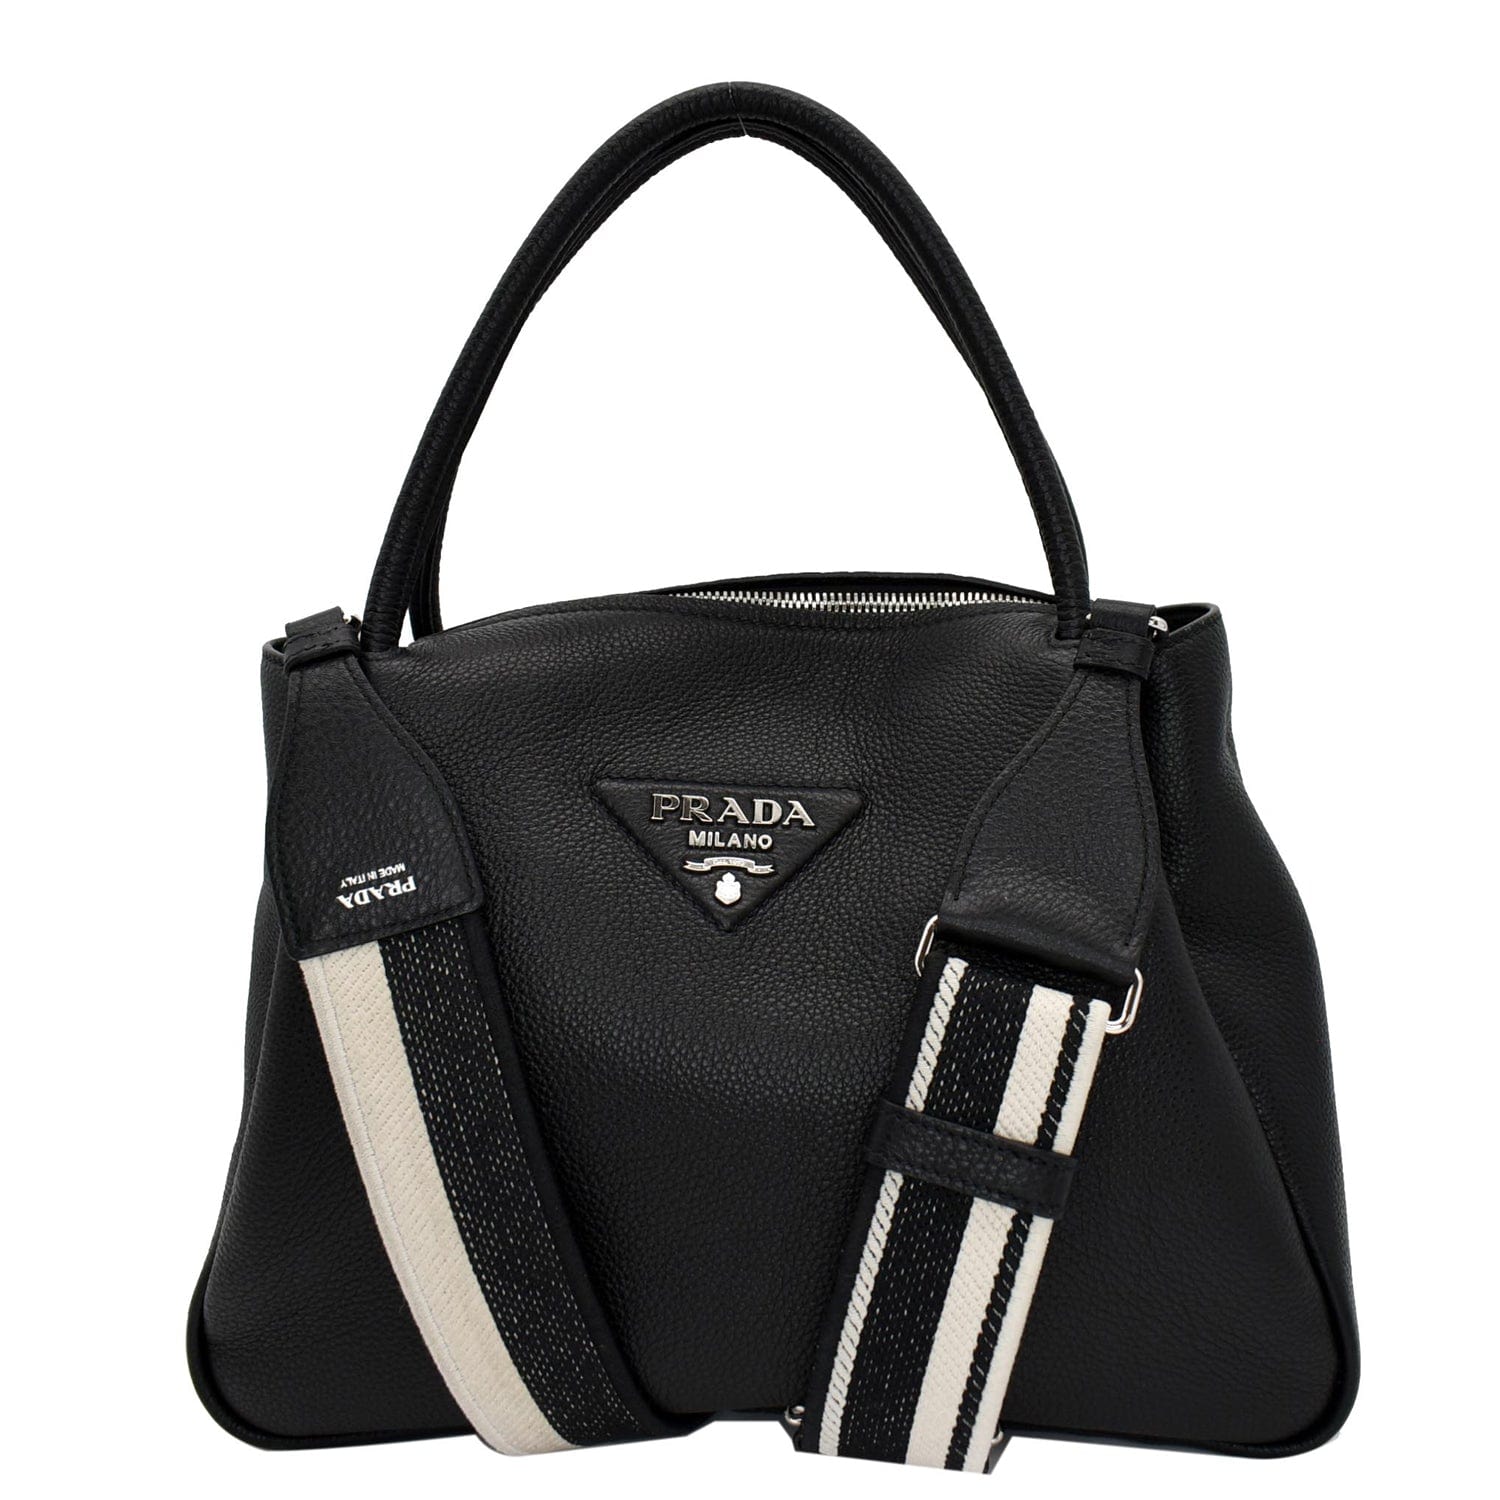 Prada - Small Flou Shoulder Bag - Women - Leather - Os - Black